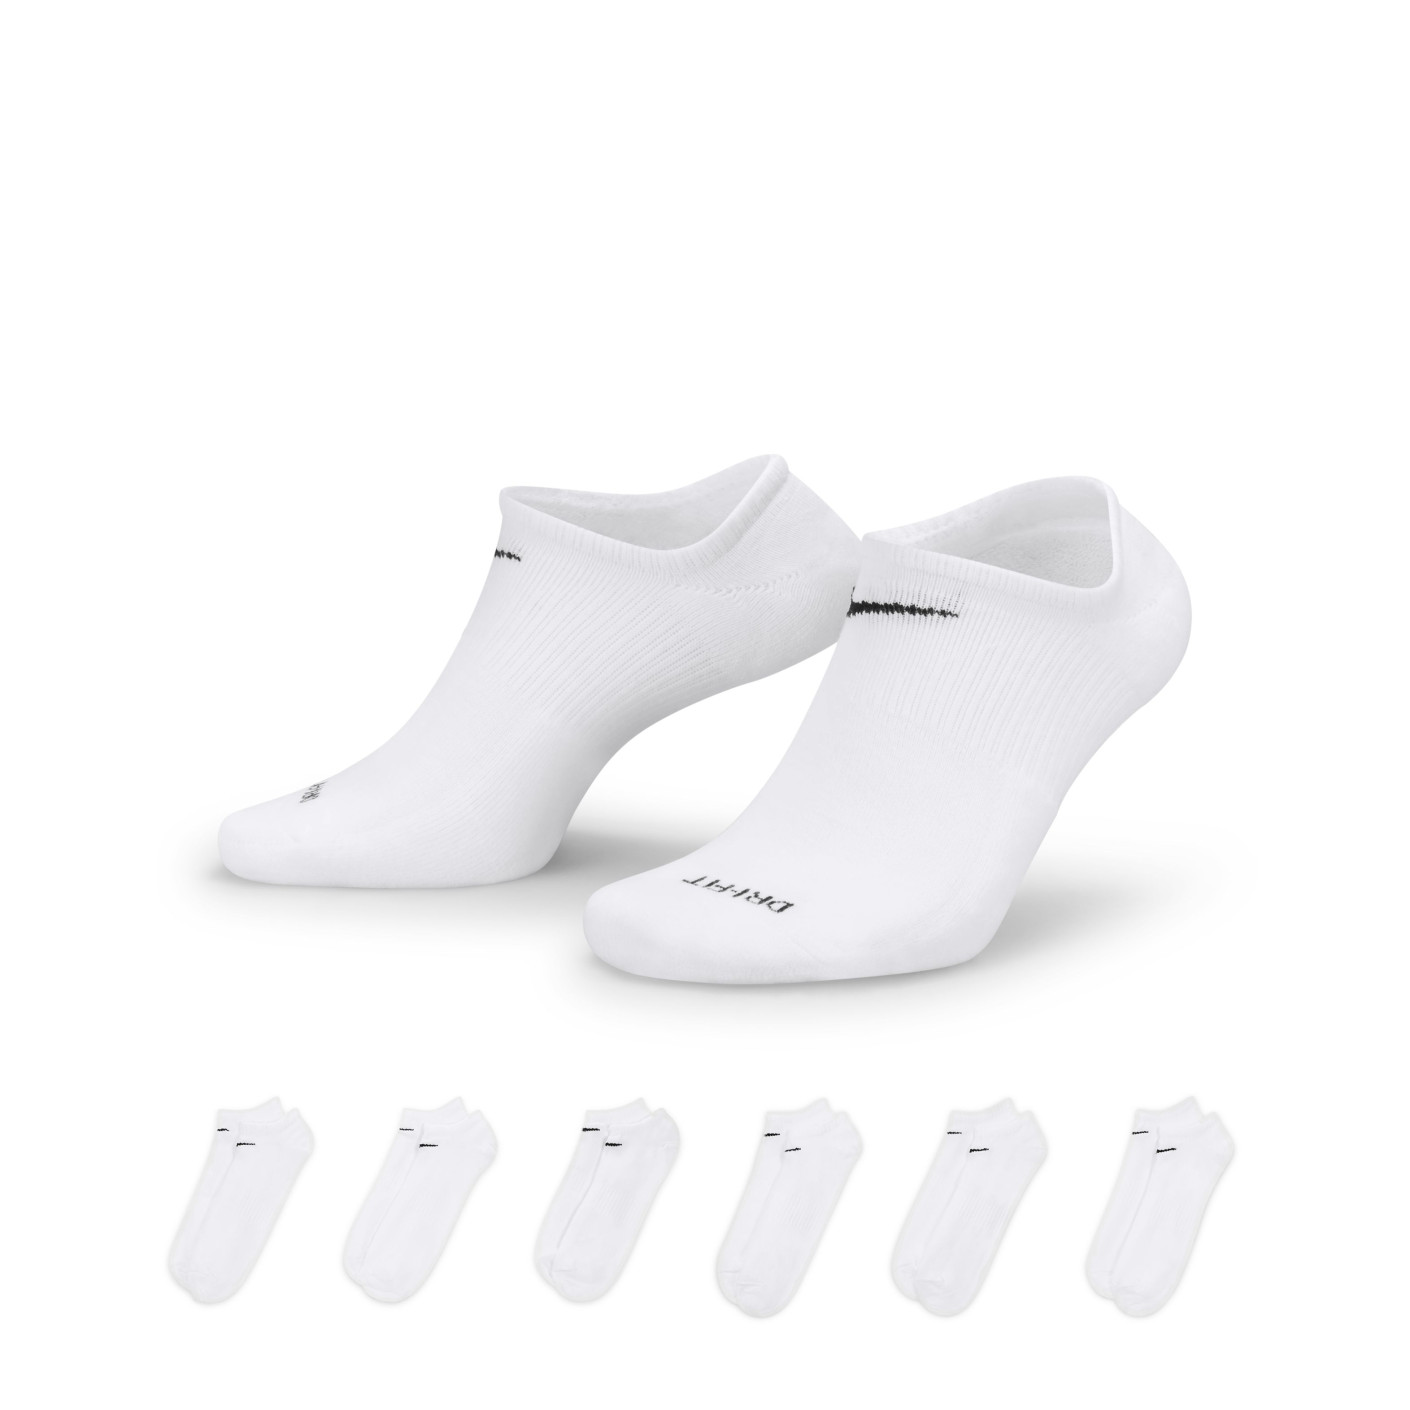 Nike Everyday Lightweight Short Sports Socks 6-Pack White